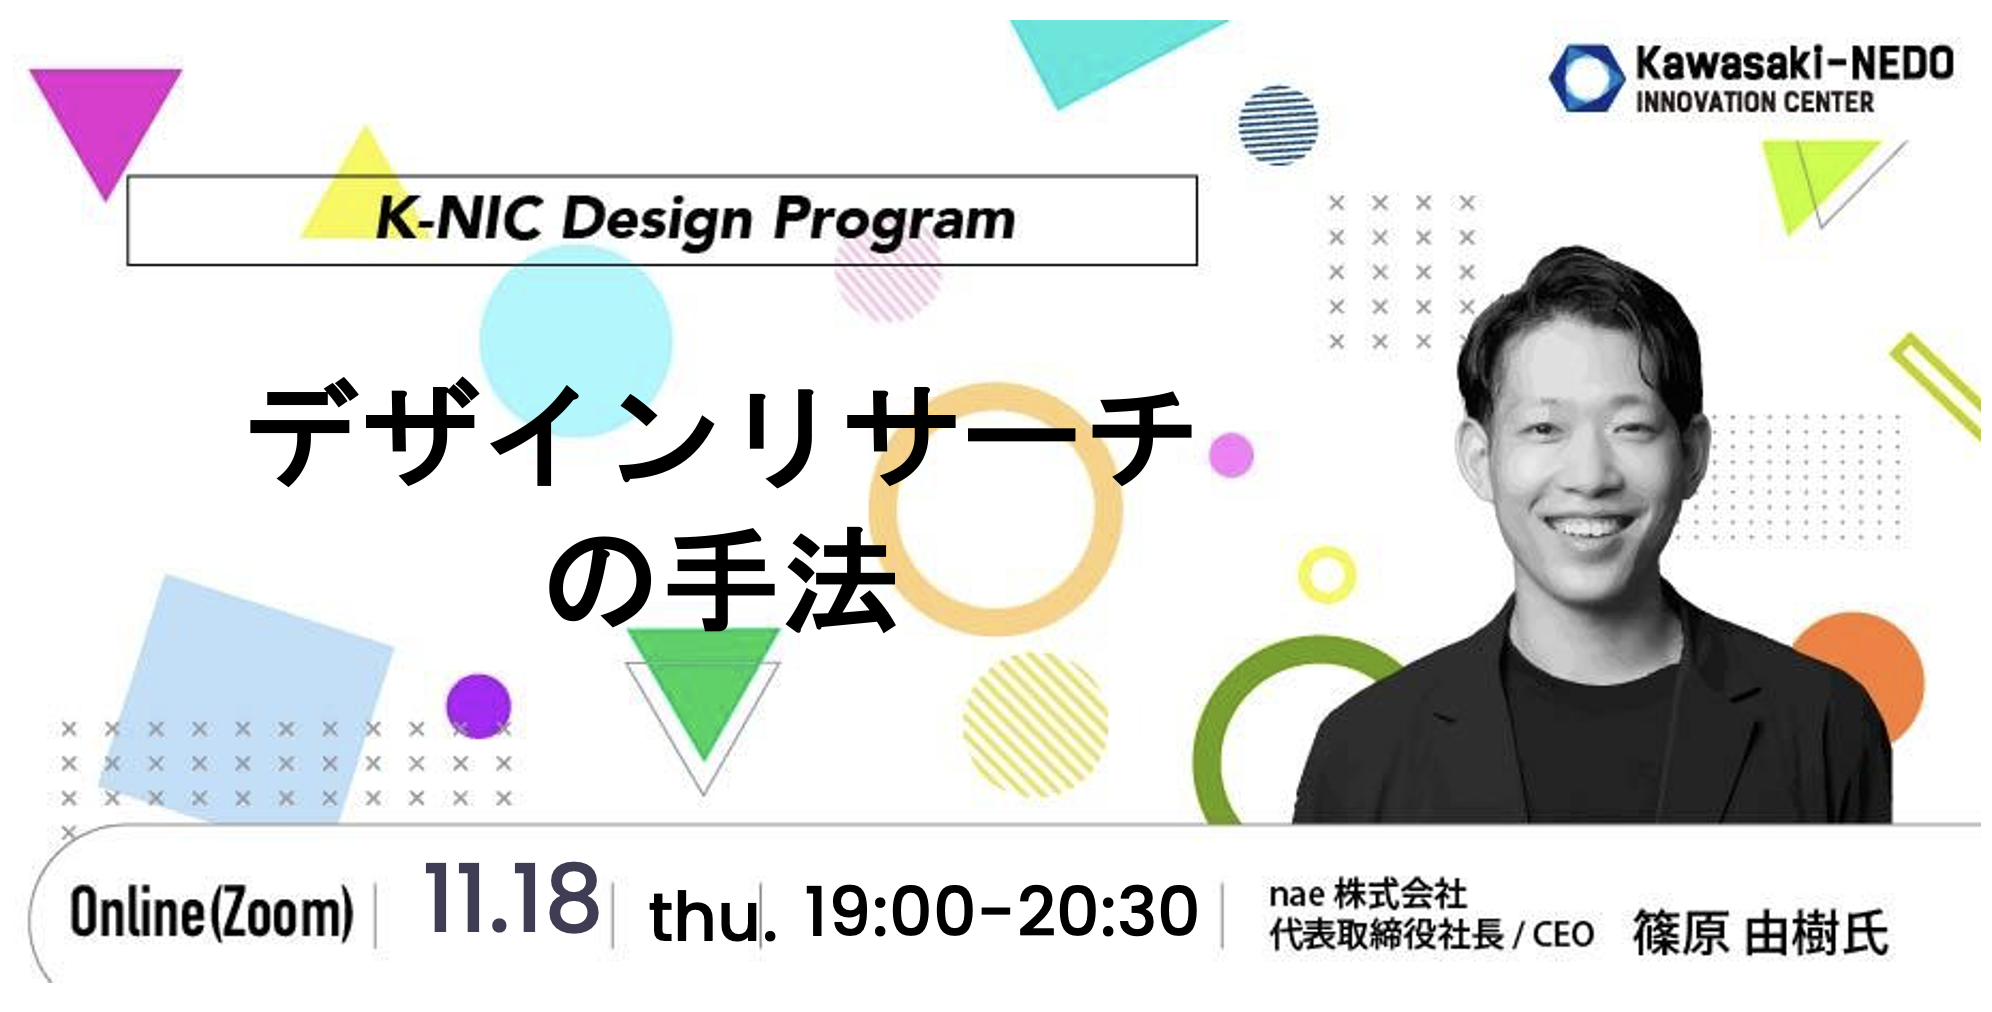 【11/18開催】K-NIC Design Program デザインリサーチの手法